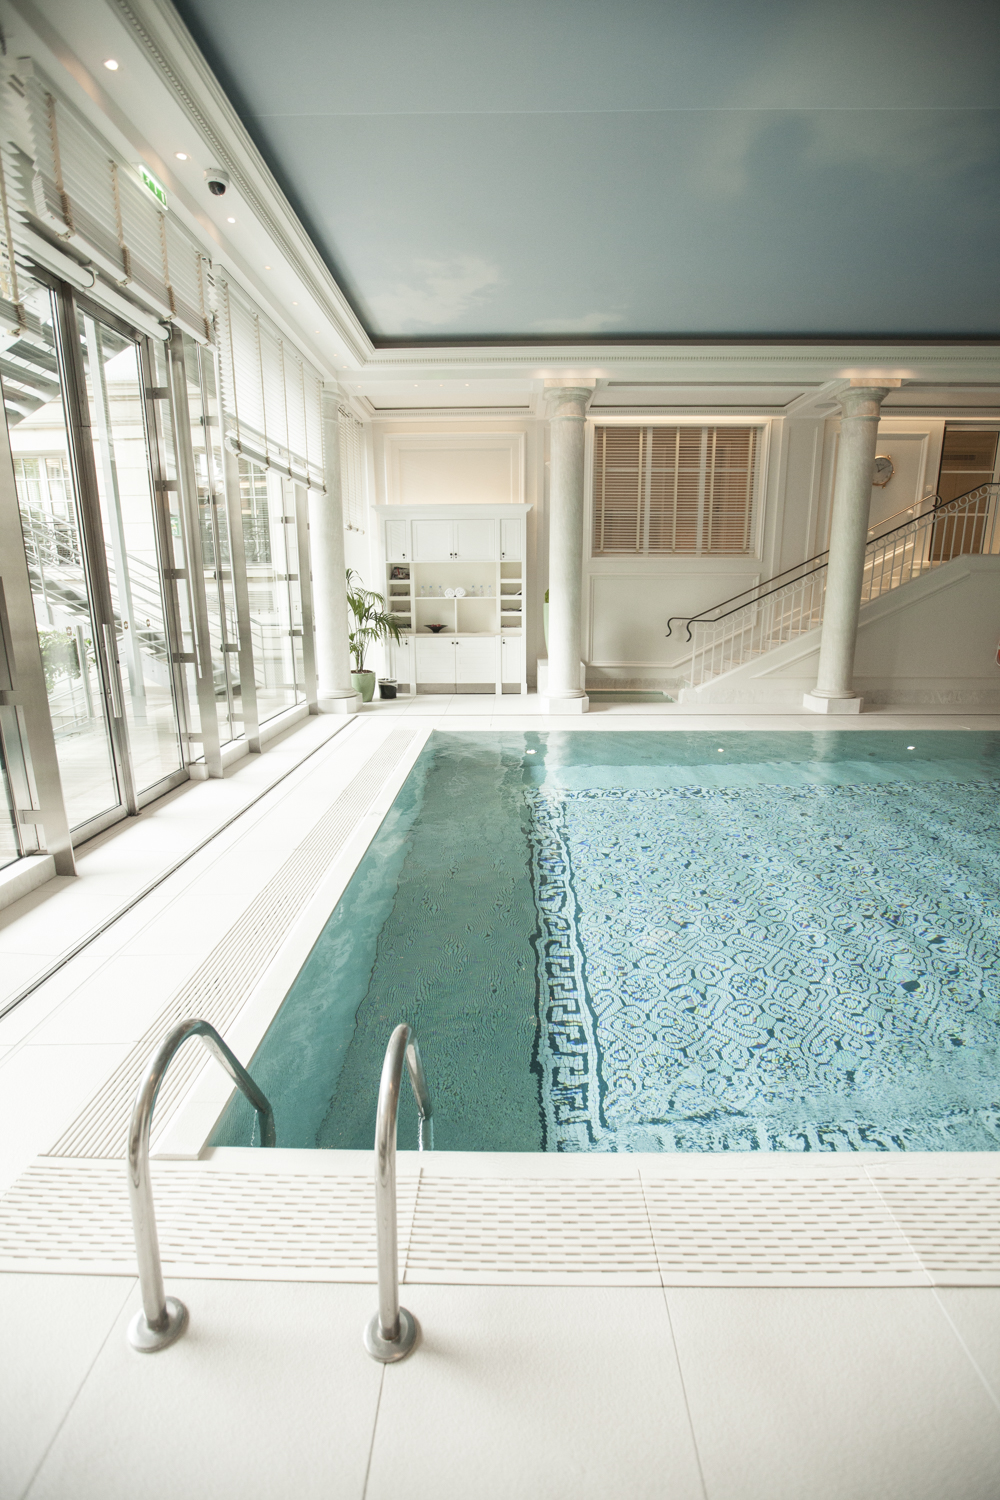 Paris Beauty Escape: The Shangri-La Hotel Spa & Pool — Vogue